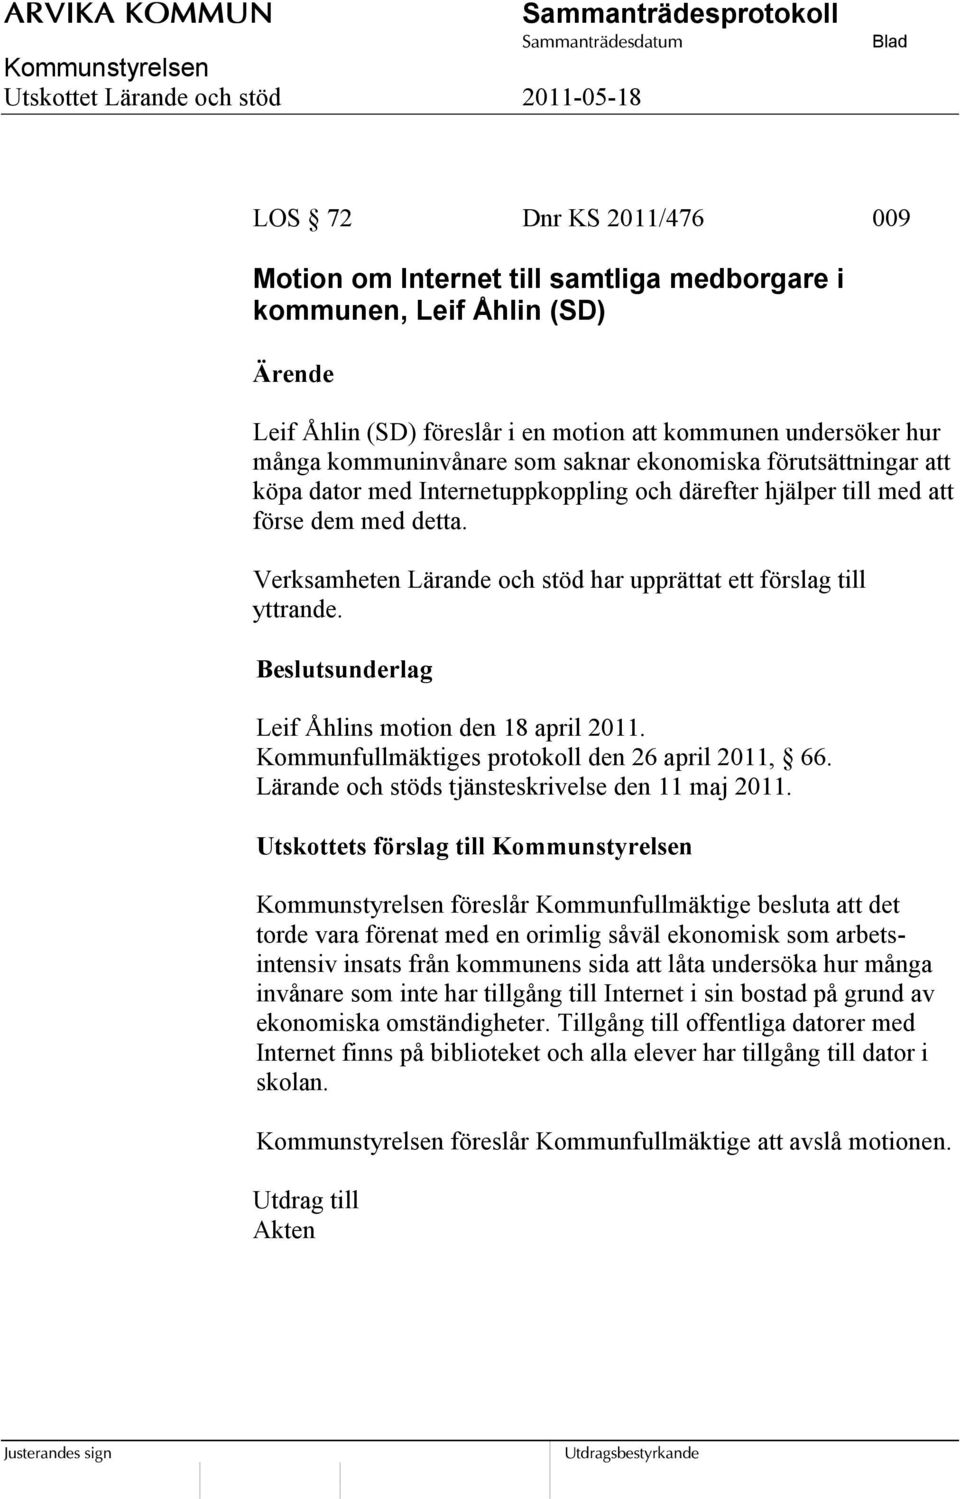 Beslutsunderlag Leif Åhlins motion den 18 april 2011. Kommunfullmäktiges protokoll den 26 april 2011, 66. Lärande och stöds tjänsteskrivelse den 11 maj 2011.